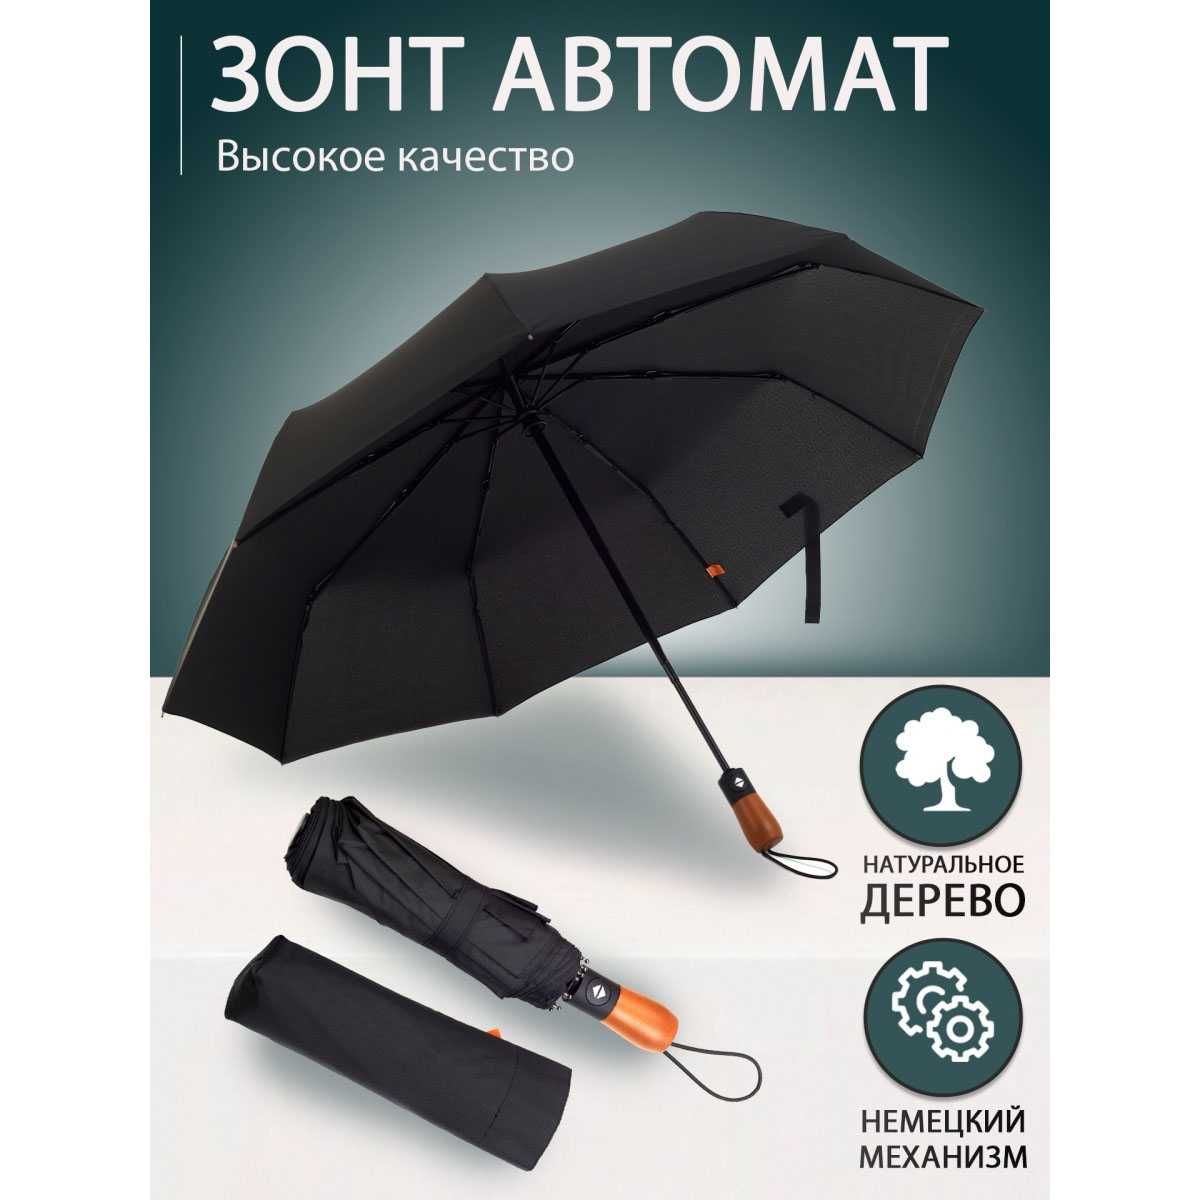 Зонтик премиум качества - Автоматический, мужской, укреплённый.